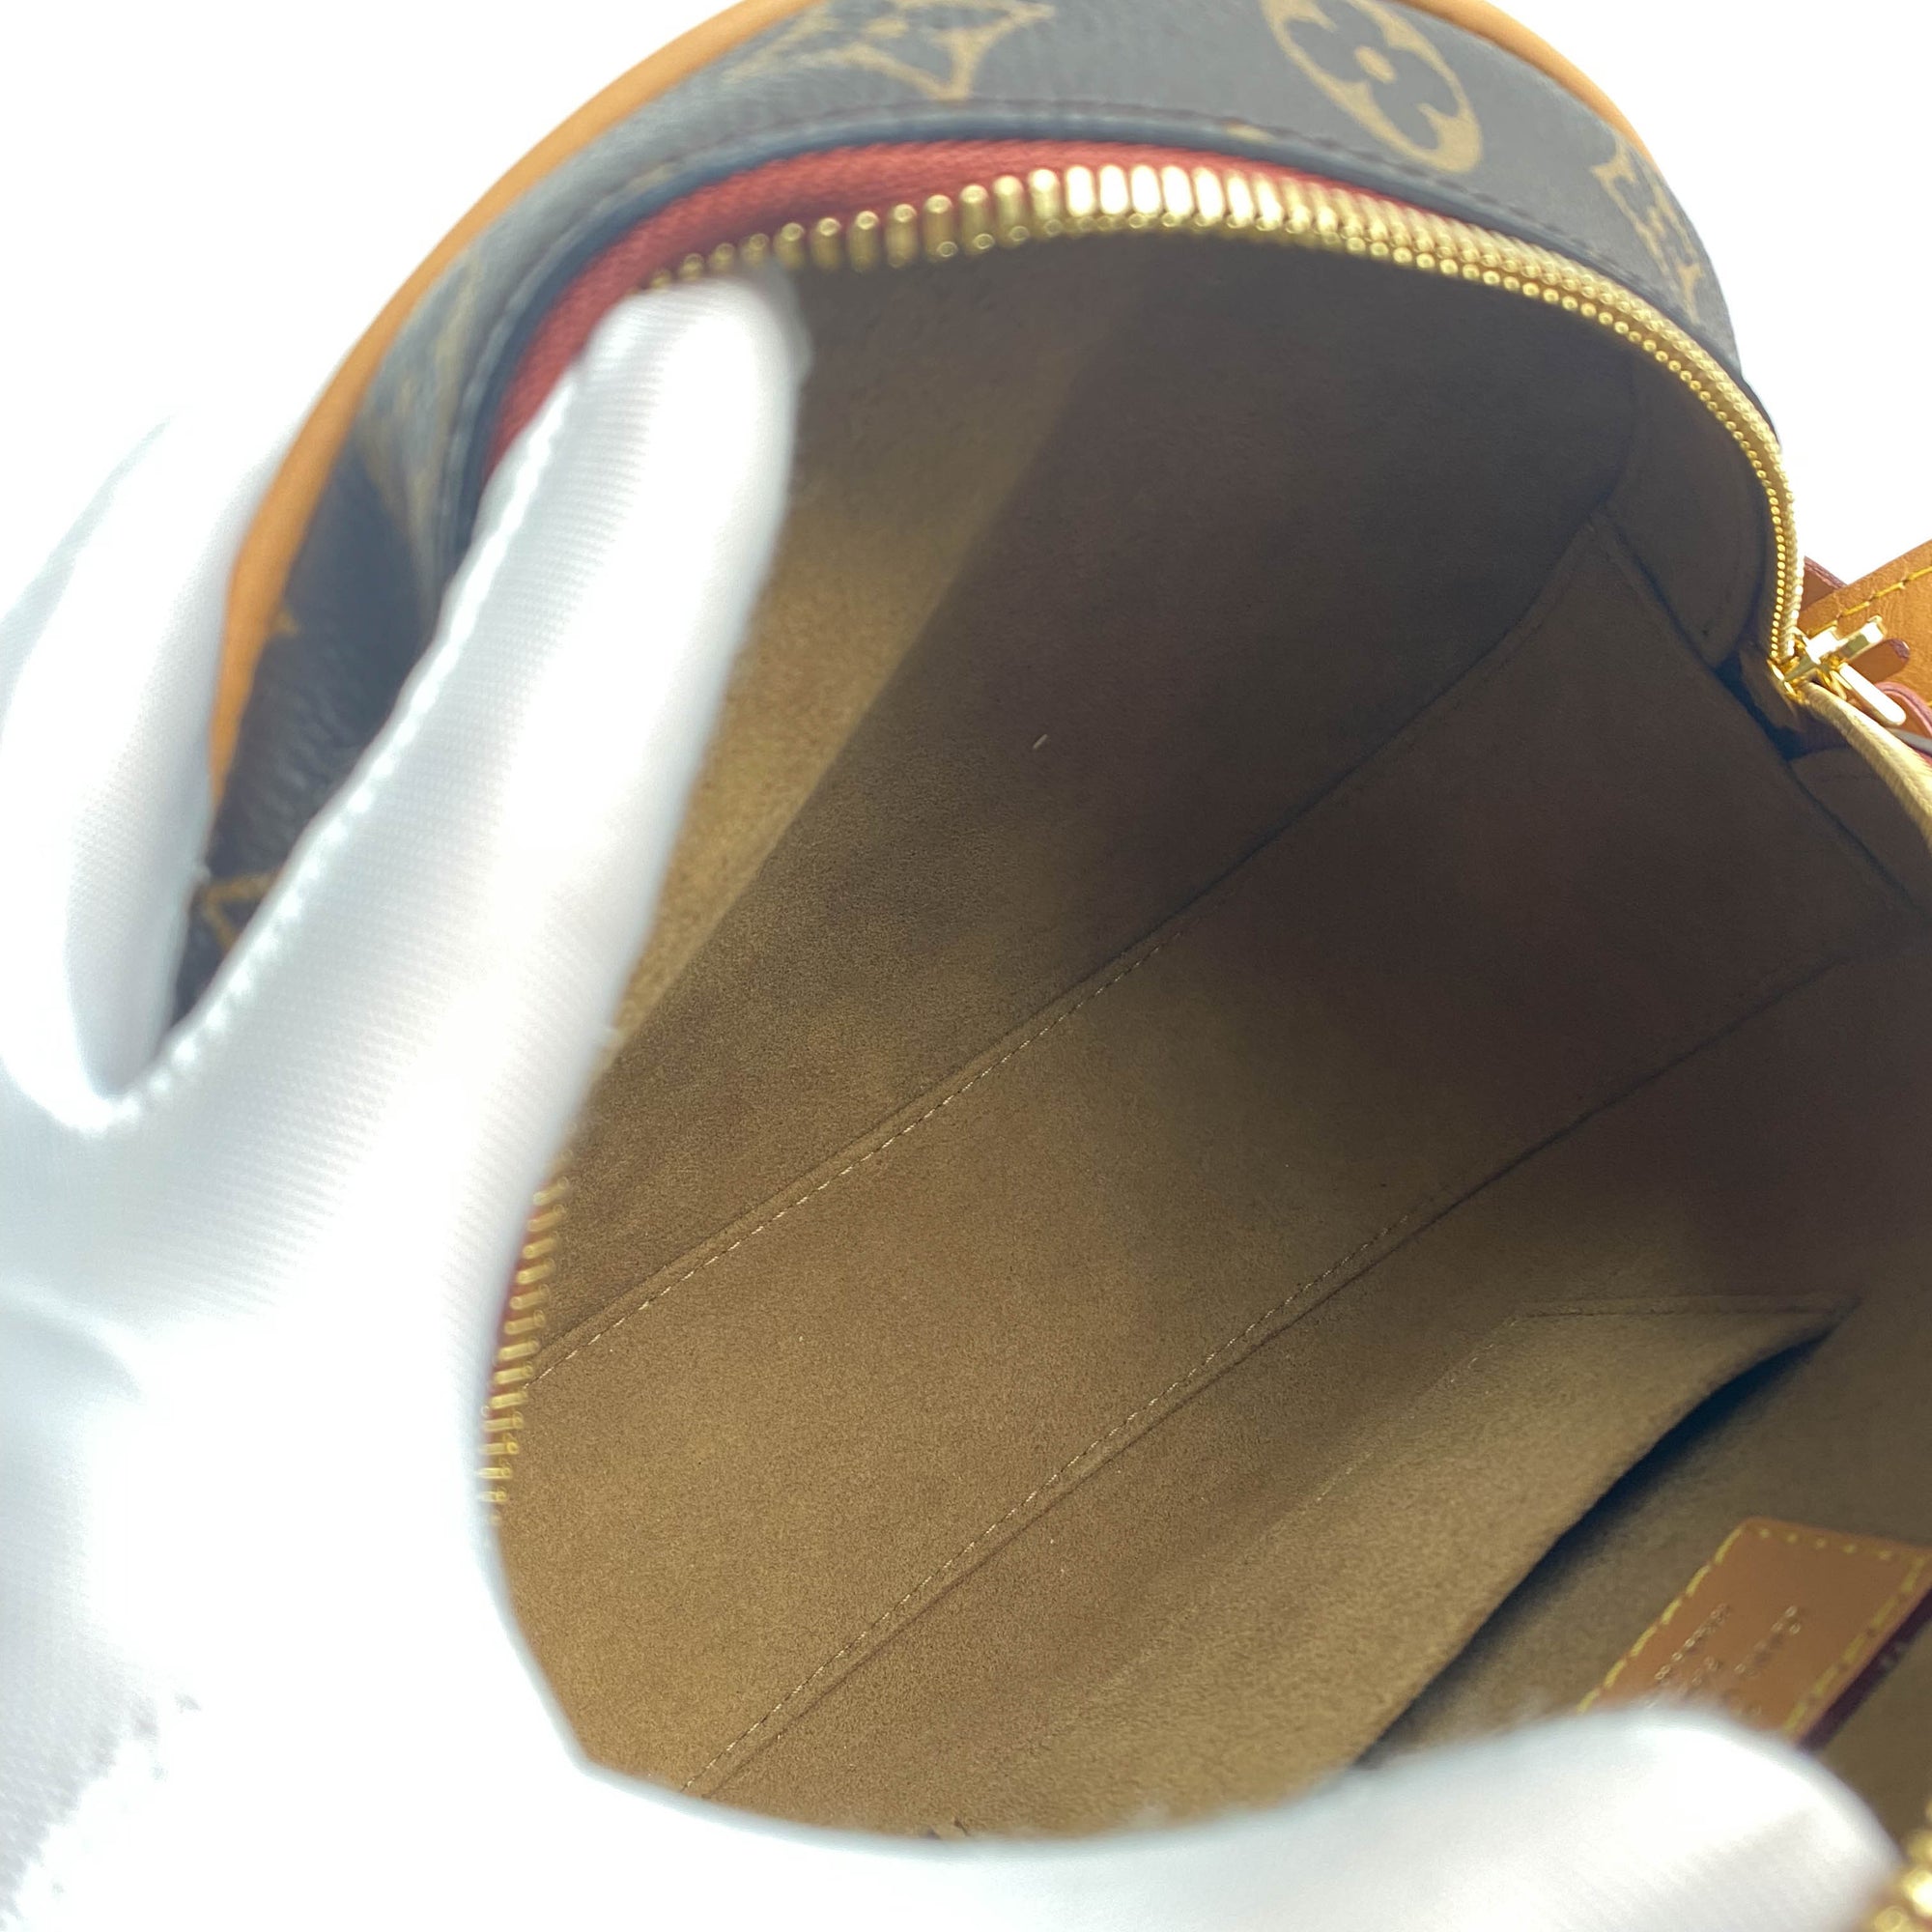 Louis Vuitton Brown Monogram Boite Chapeau Souple MM Bag – The Closet